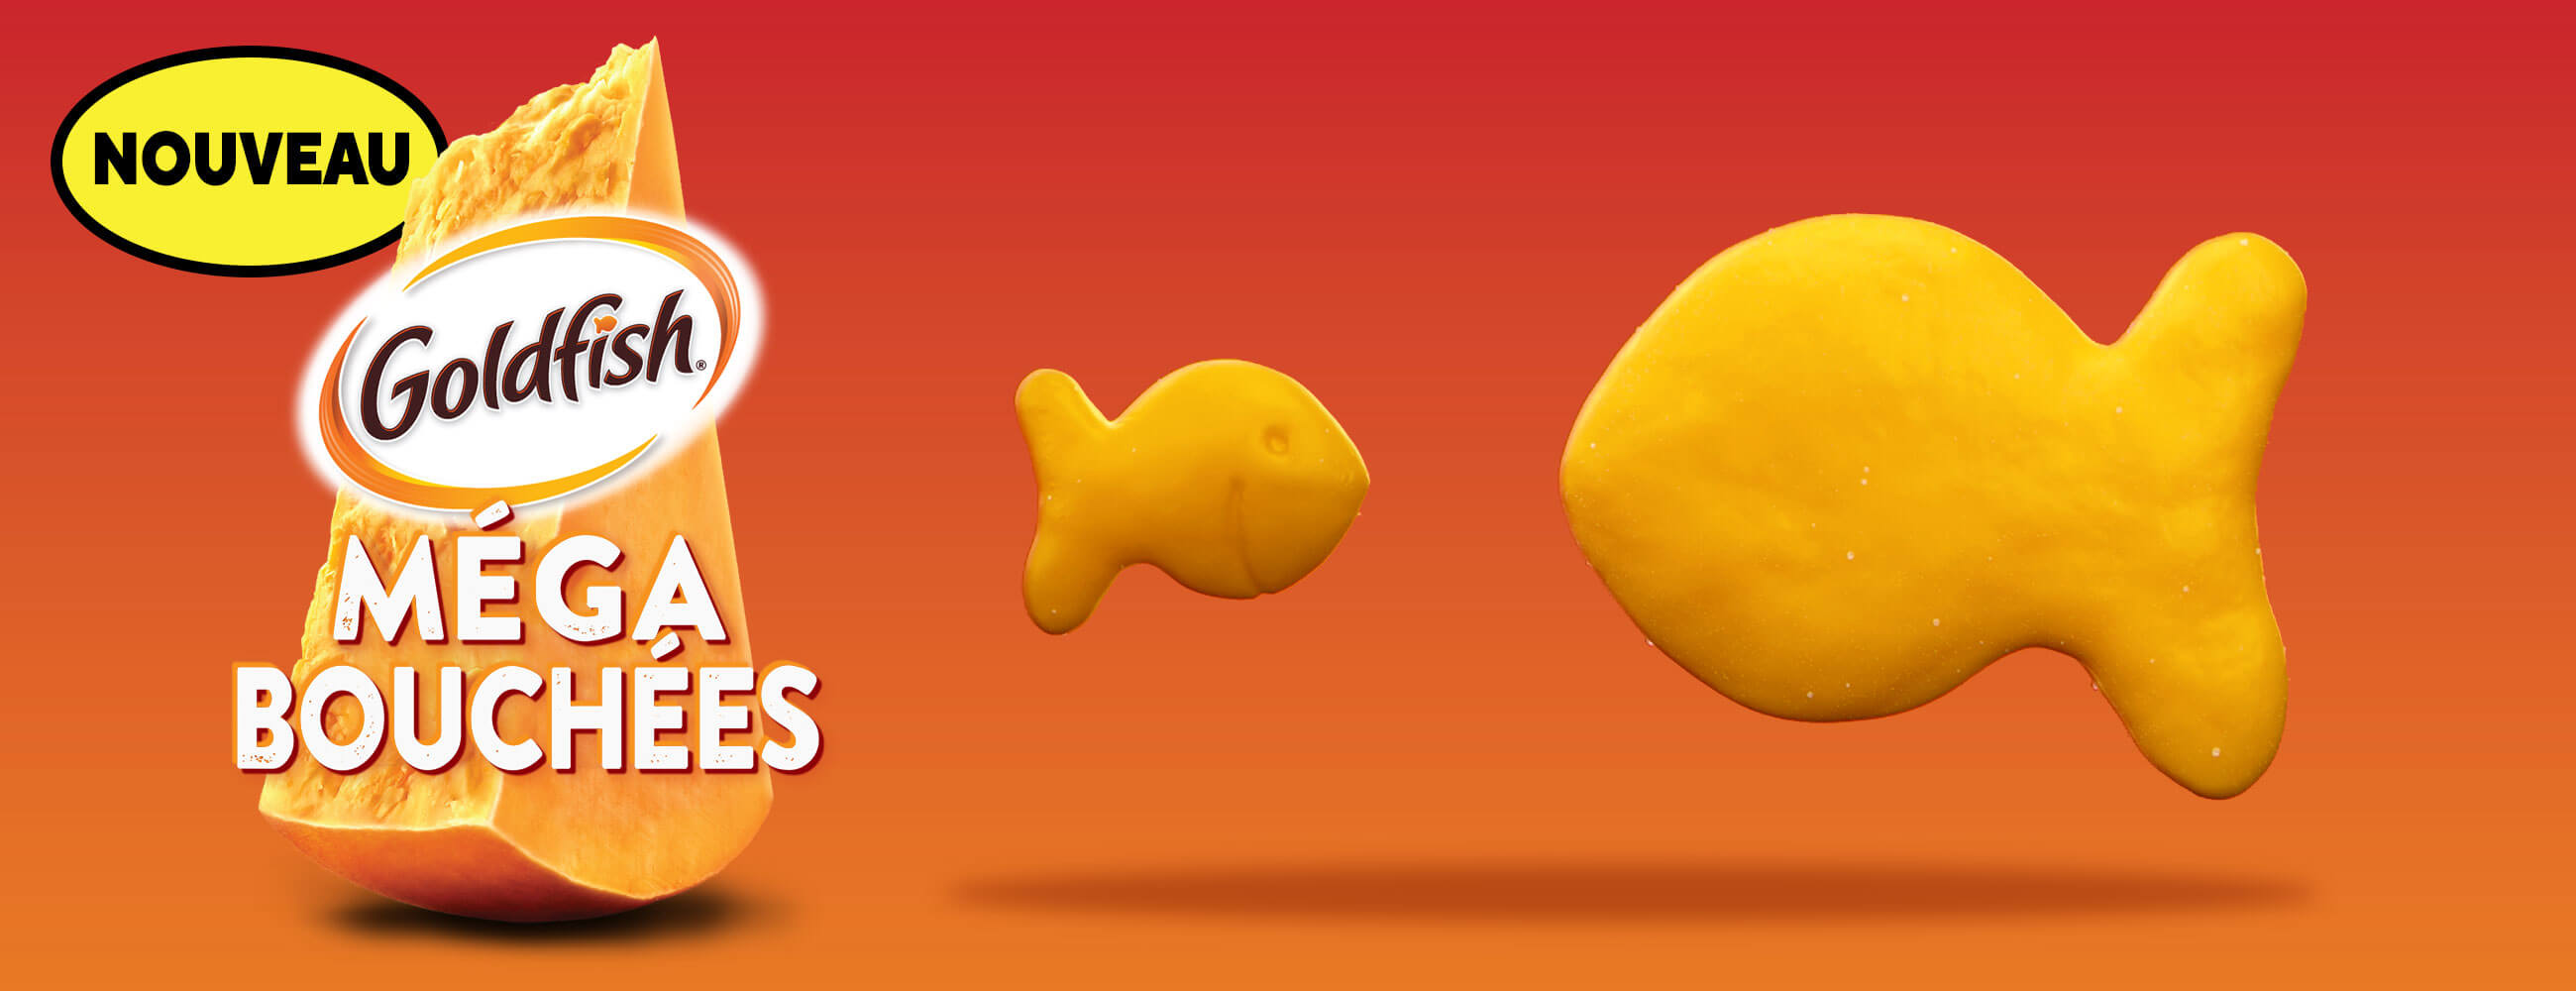 Nouveau GoldfishMD Méga Bouchées